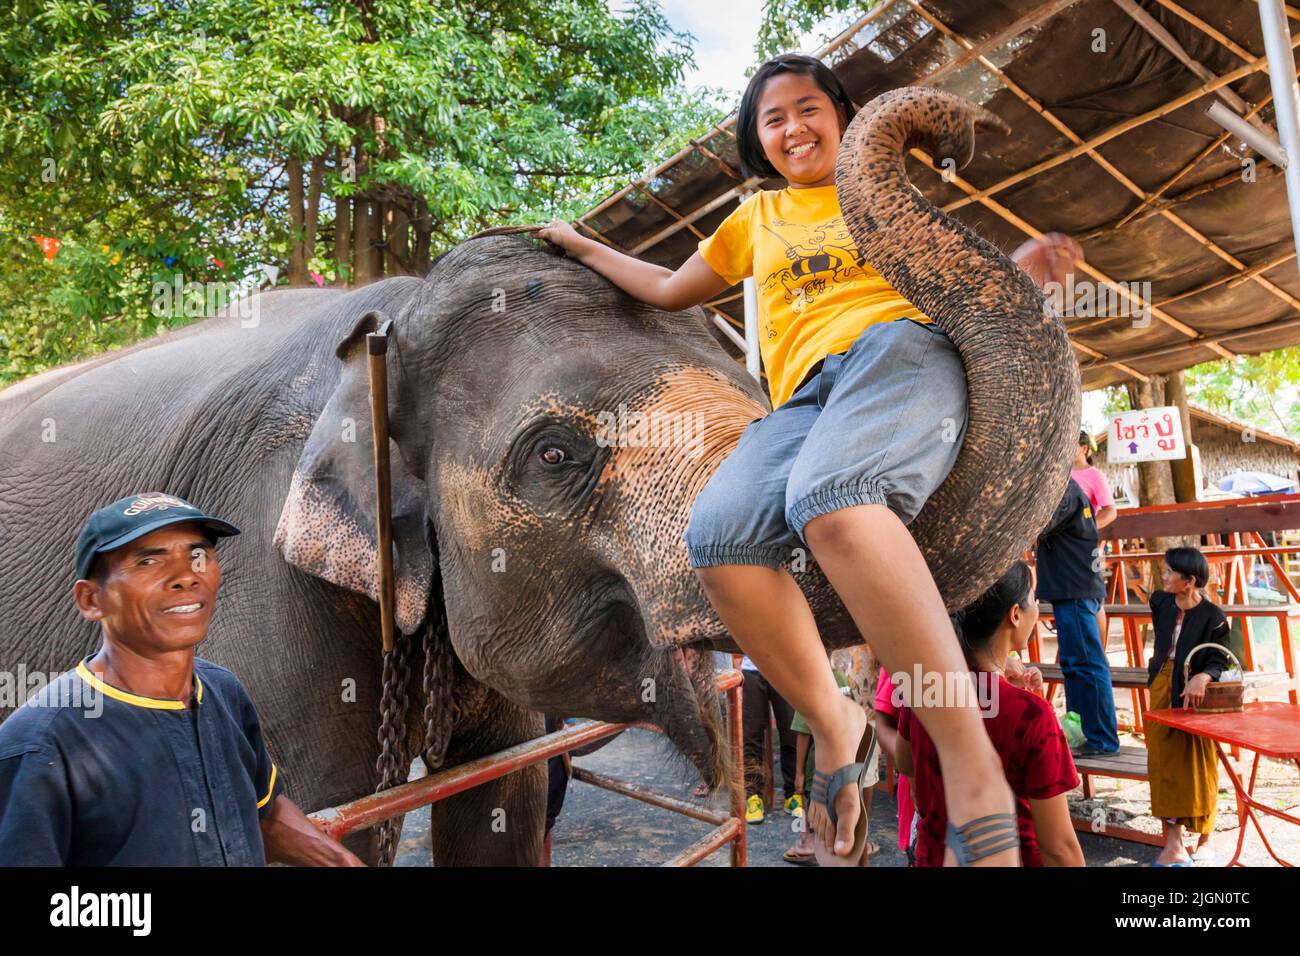 Elephant village, chica en baúl, espectáculo de elefantes, actuación, surin, ISAN (Isaan), Tailandia, Sudeste Asiático, Asia Foto de stock